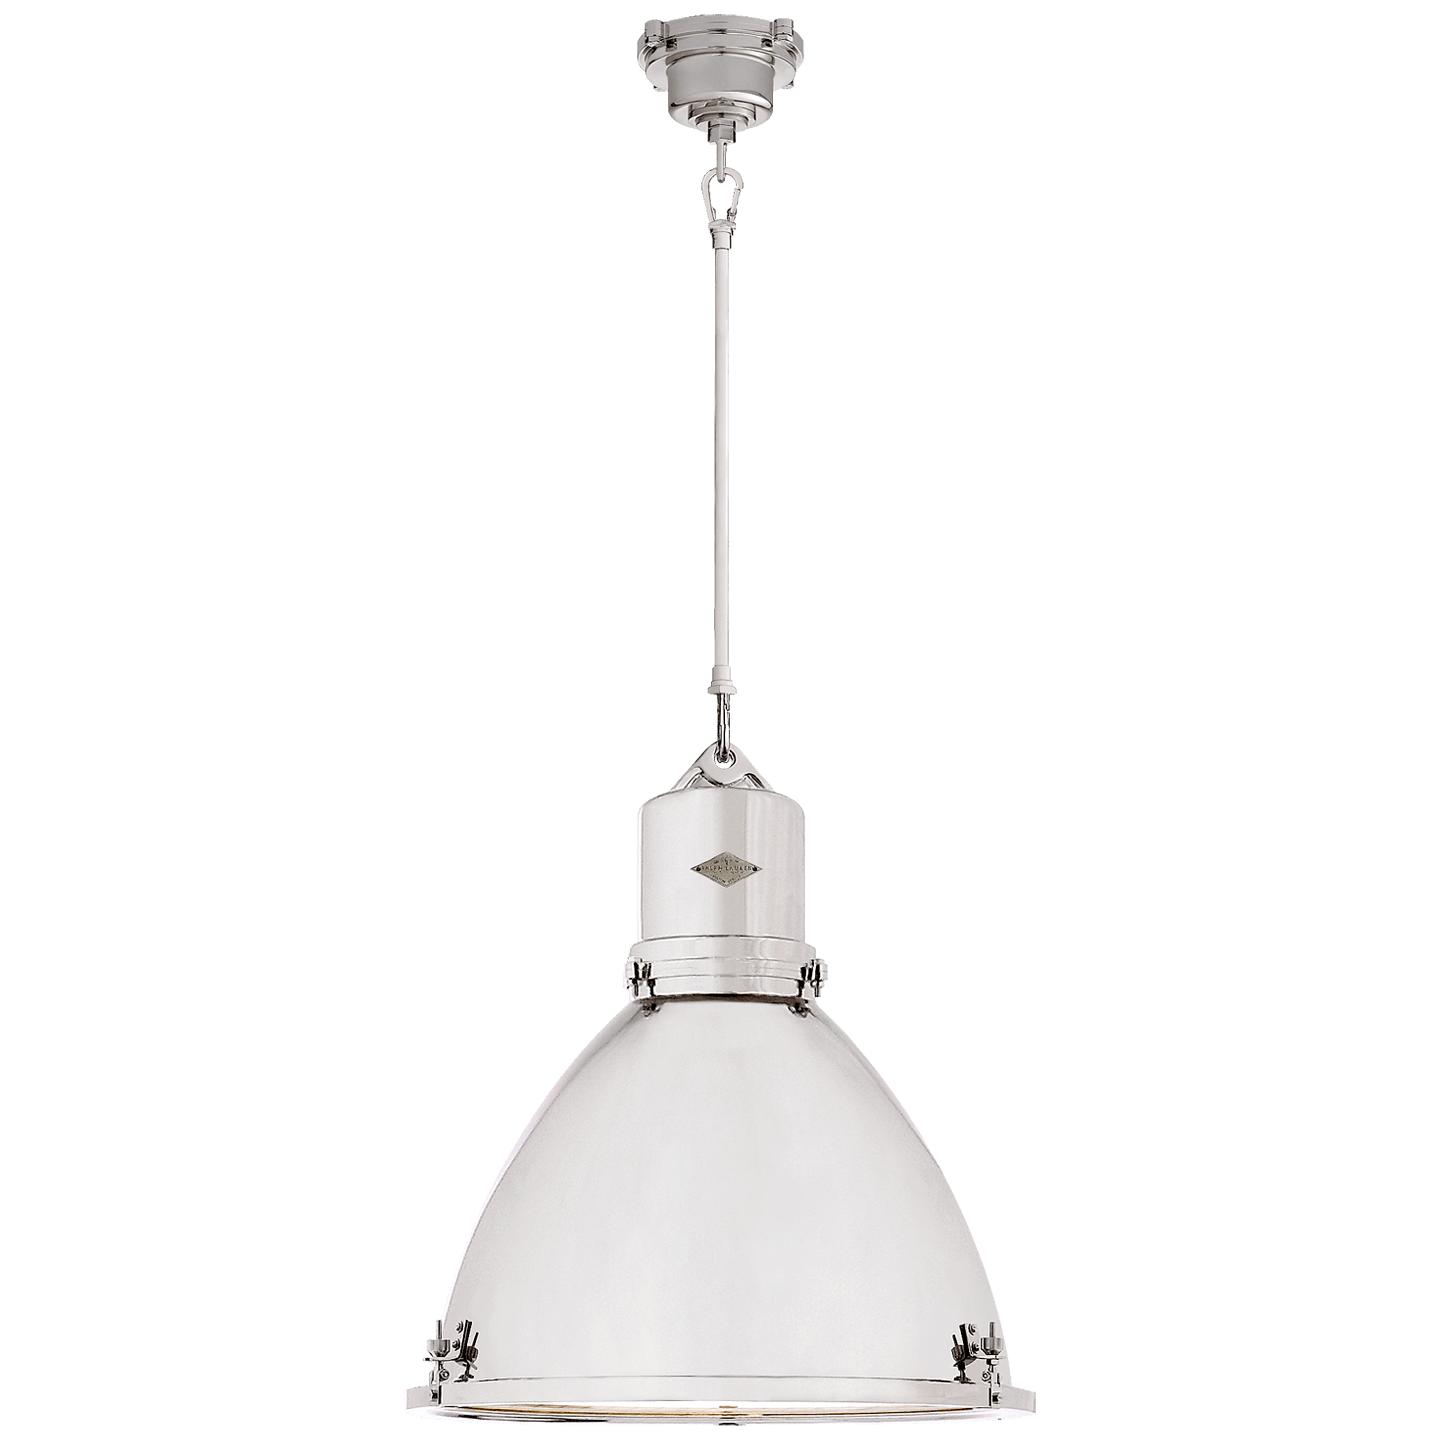 Купить Подвесной светильник Fulton Large Pendant в интернет-магазине roooms.ru